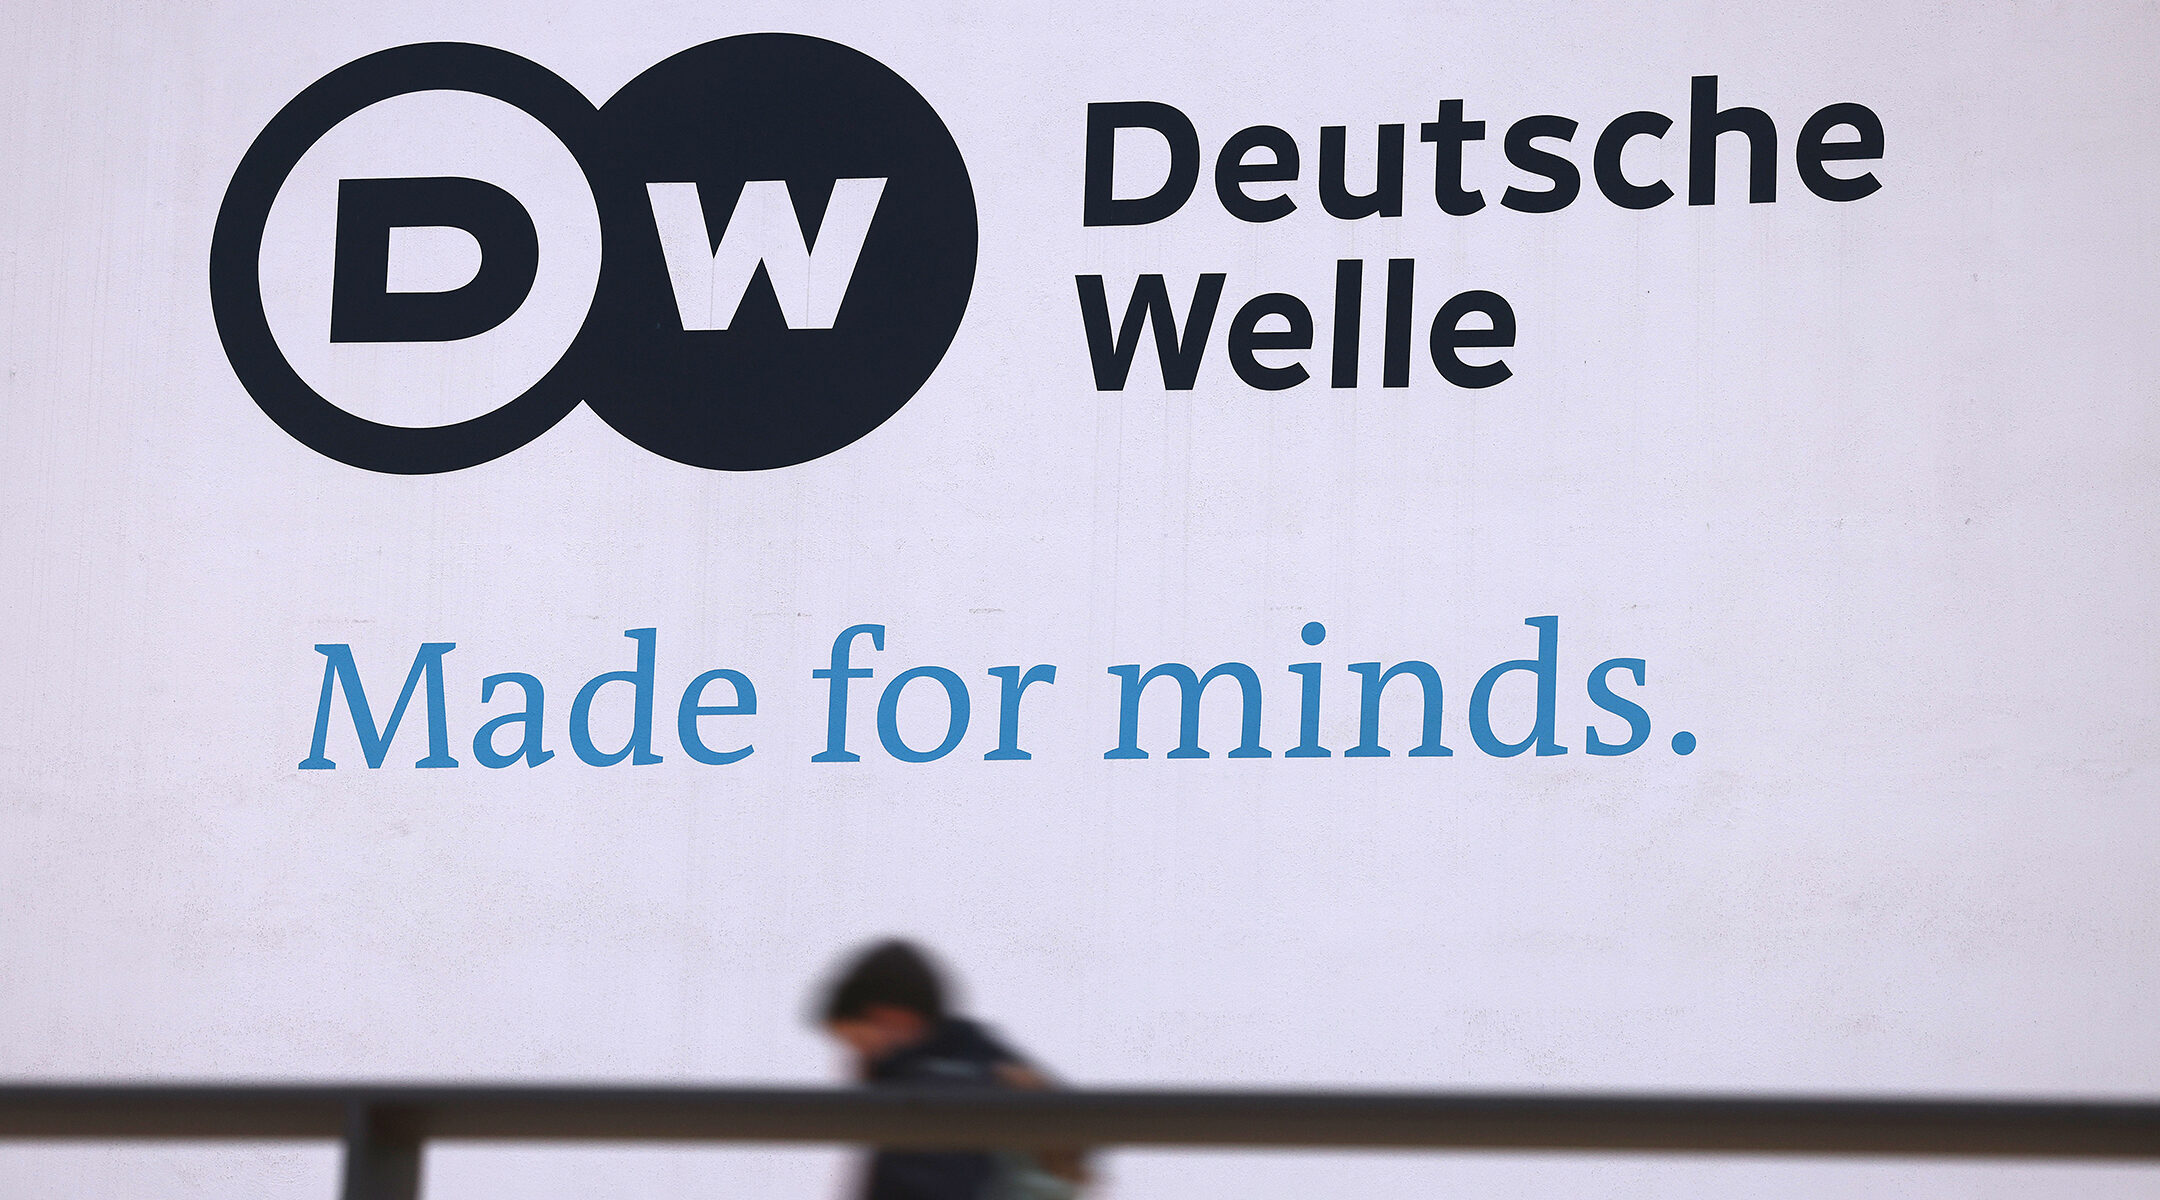 The Deutsche Welle logo